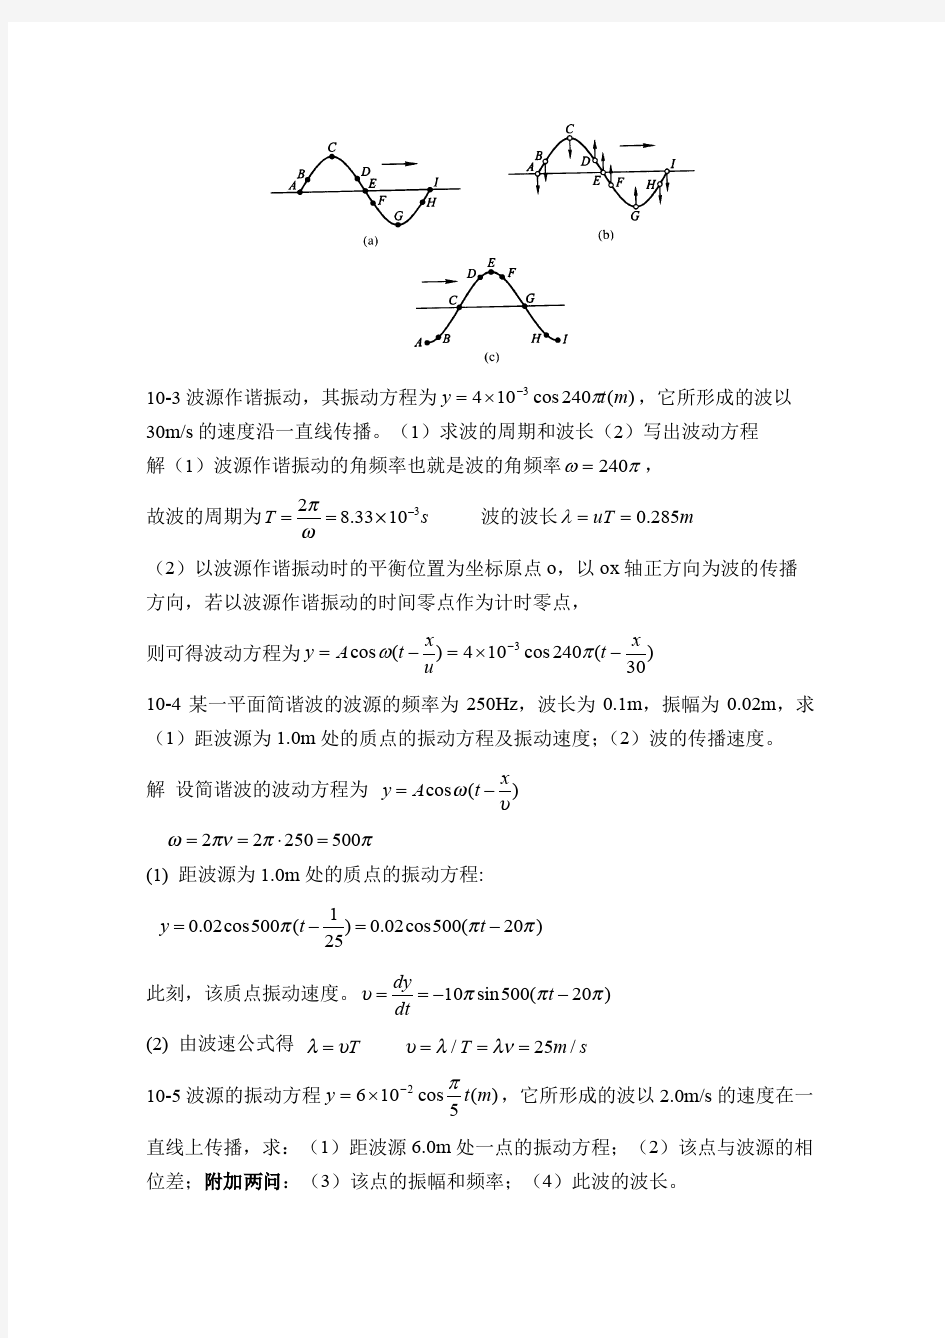 大学物理(肖剑荣主编)-习题答案-第10章